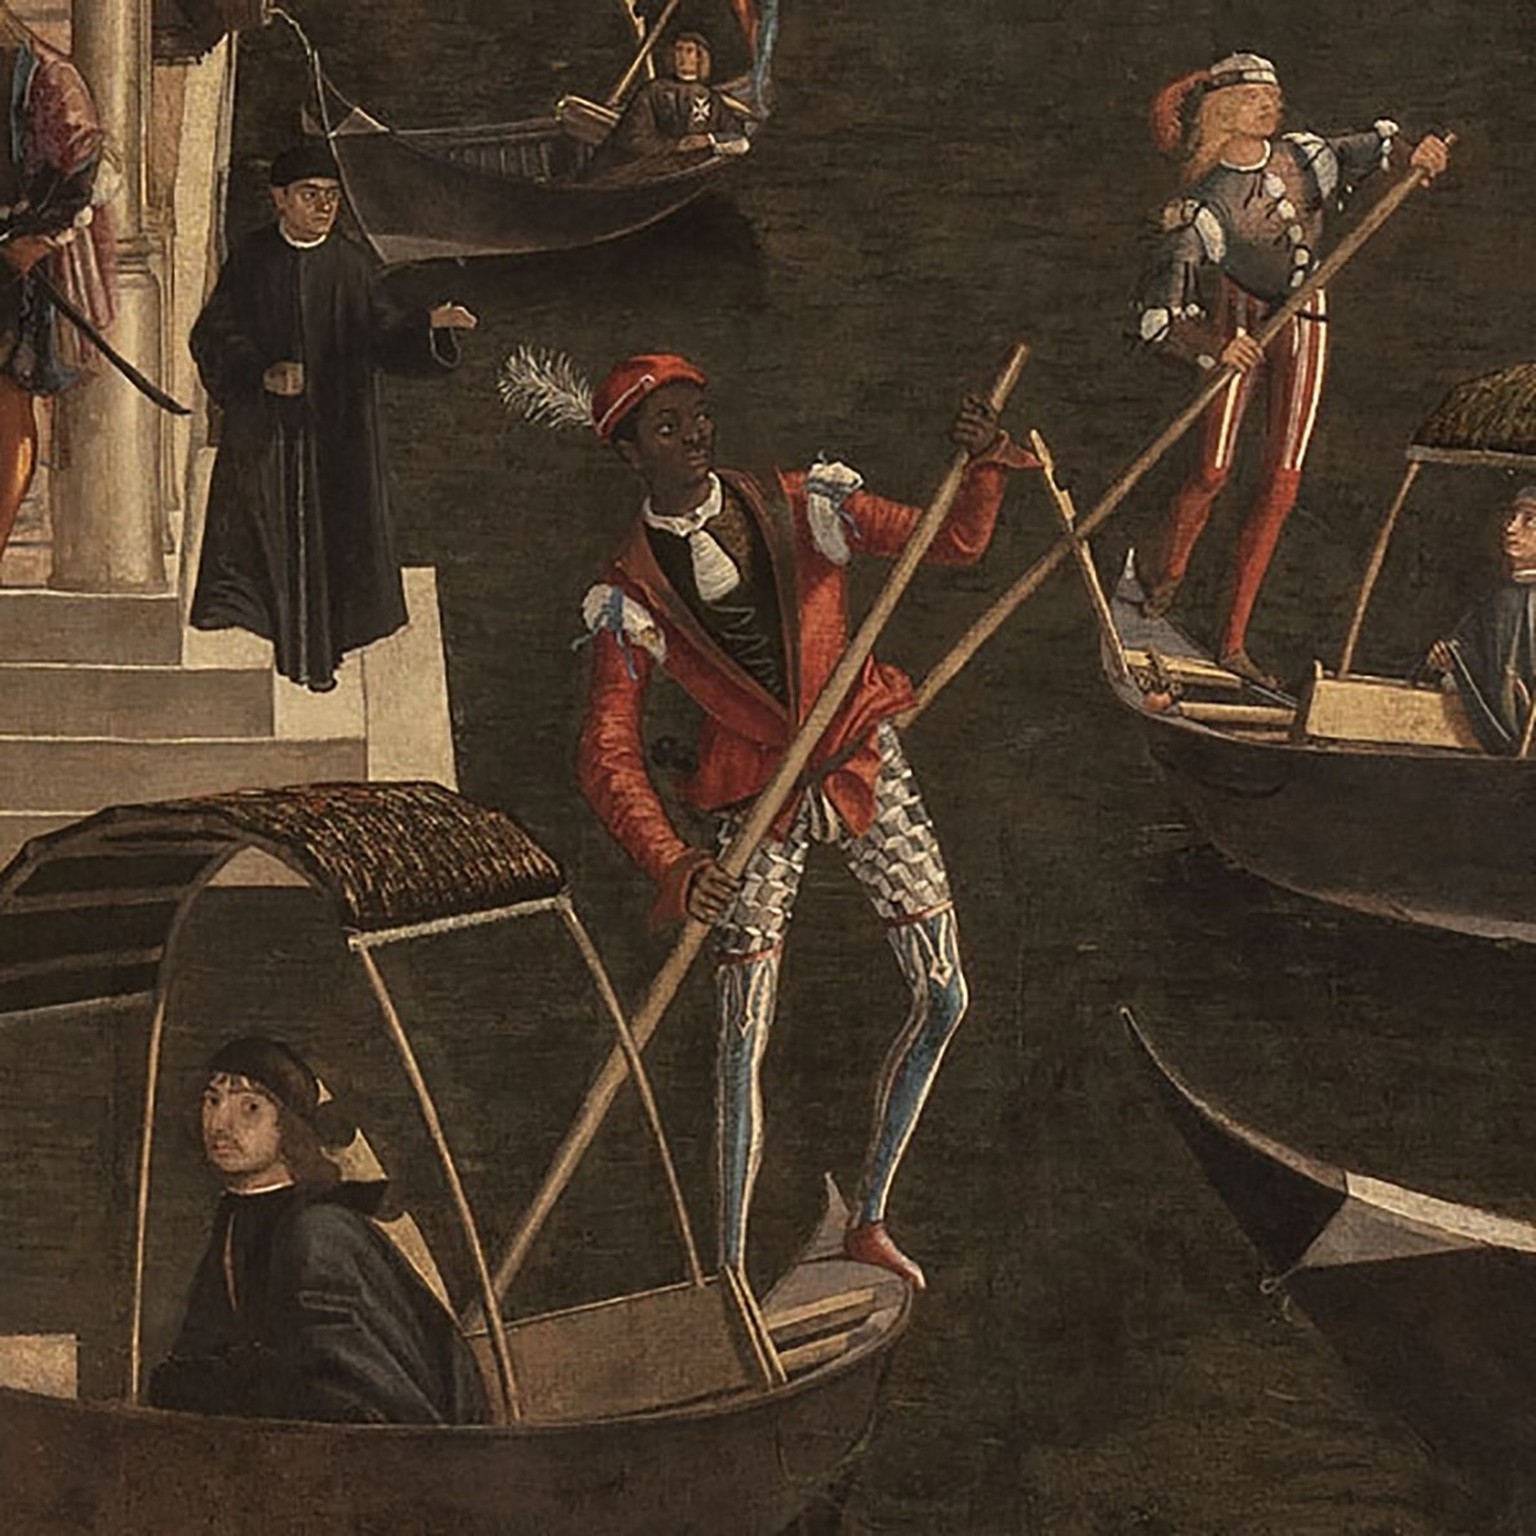 Gondolier noir dans le tableau Le Miracle de la relique de la Croix au pont du Rialto, 1496, (extrait).
https://www.gallerieaccademia.it/miracolo-della-reliquia-della-croce-al-ponte-di-rialto